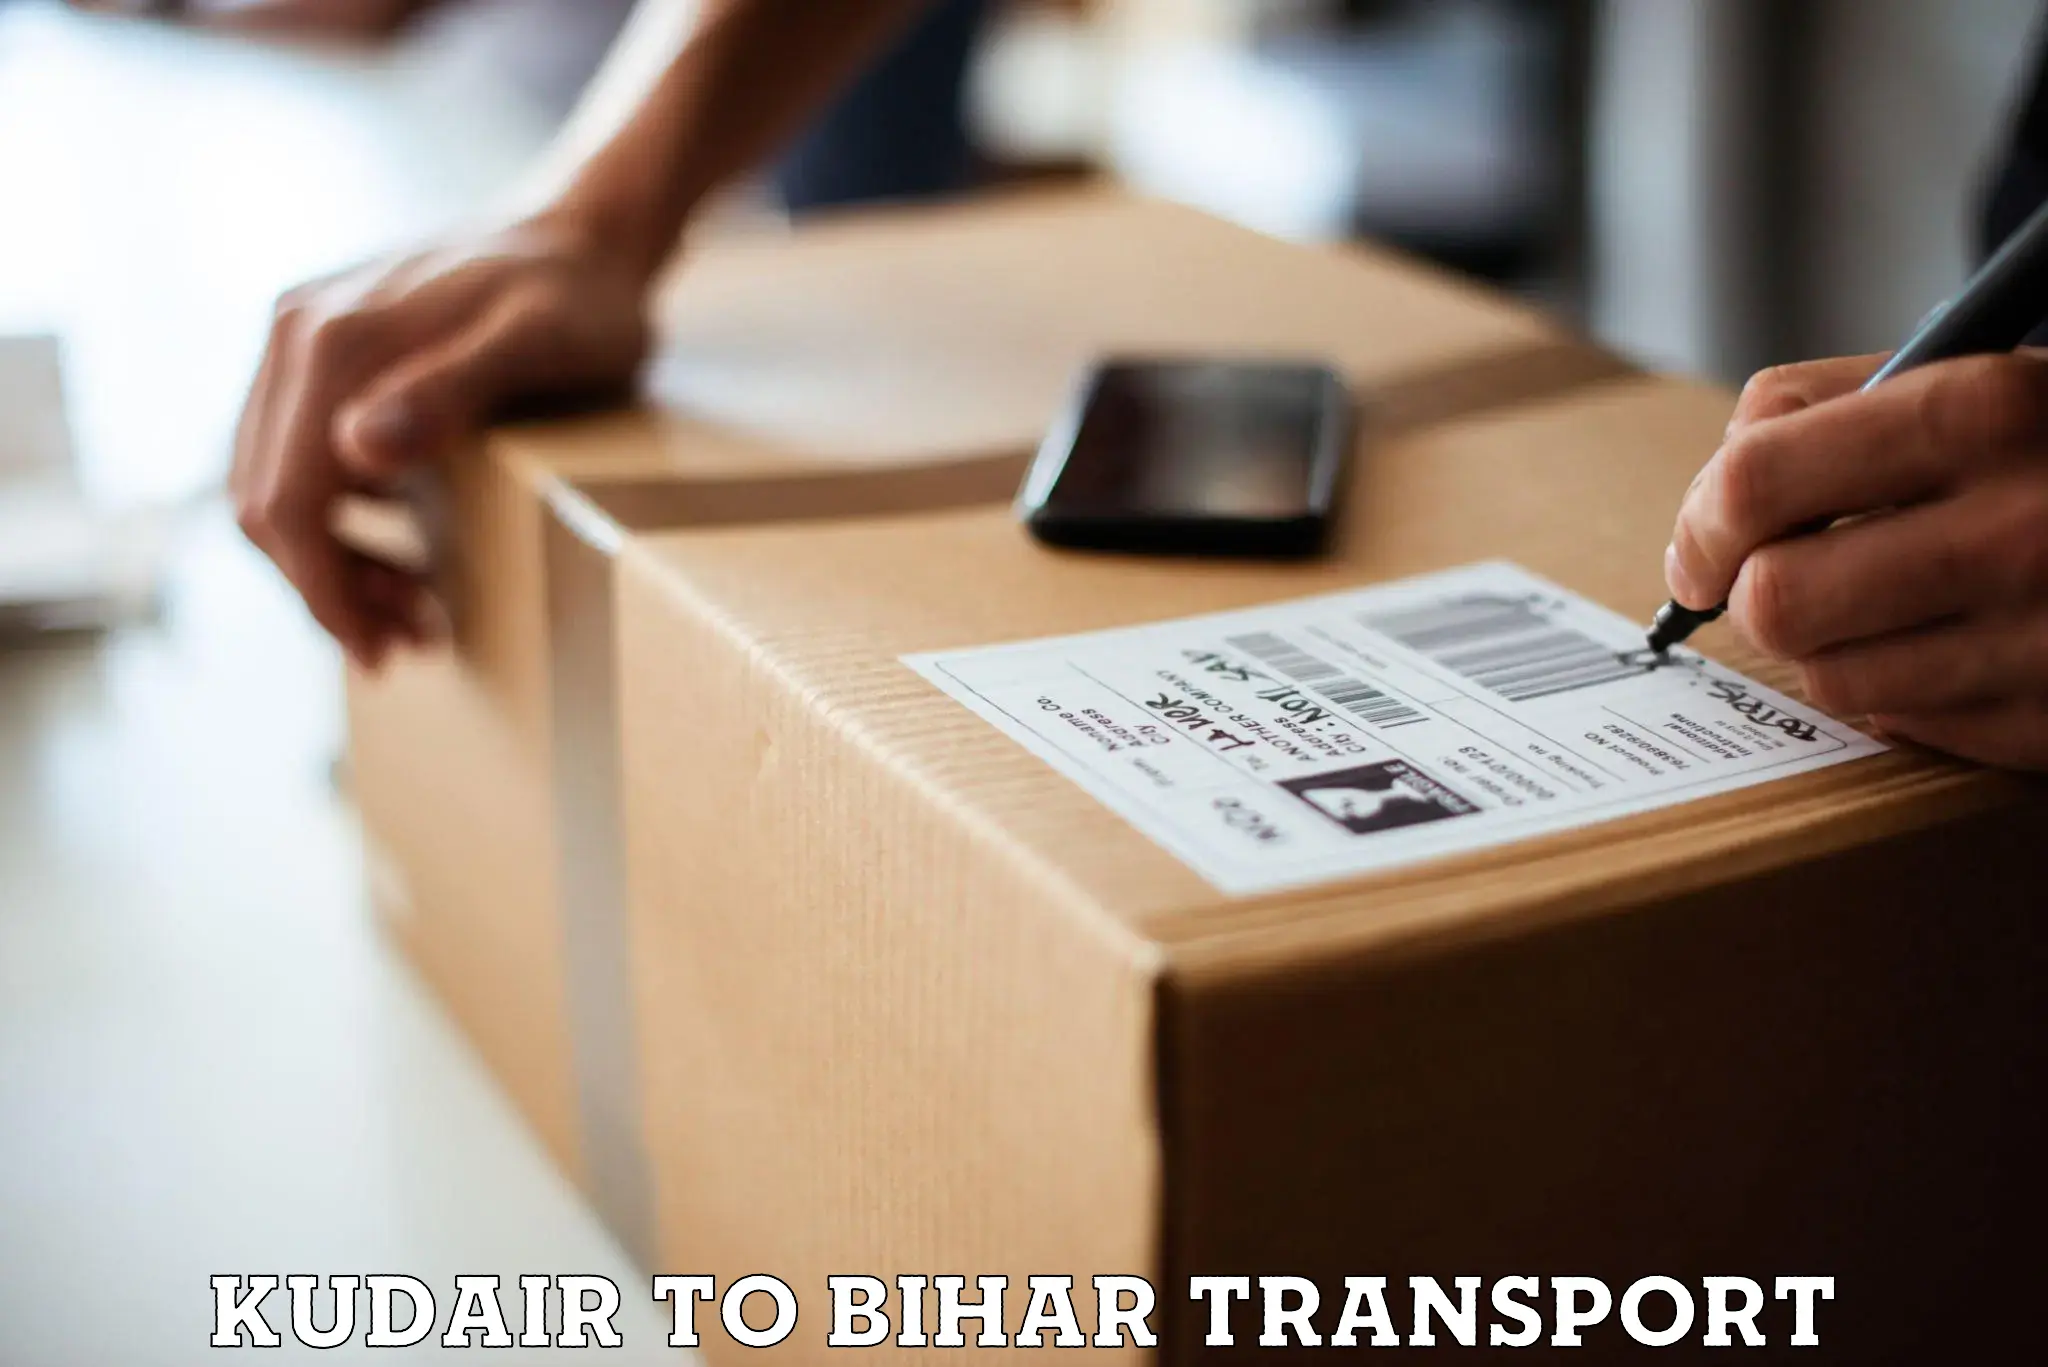 Furniture transport service Kudair to IIIT Bhagalpur